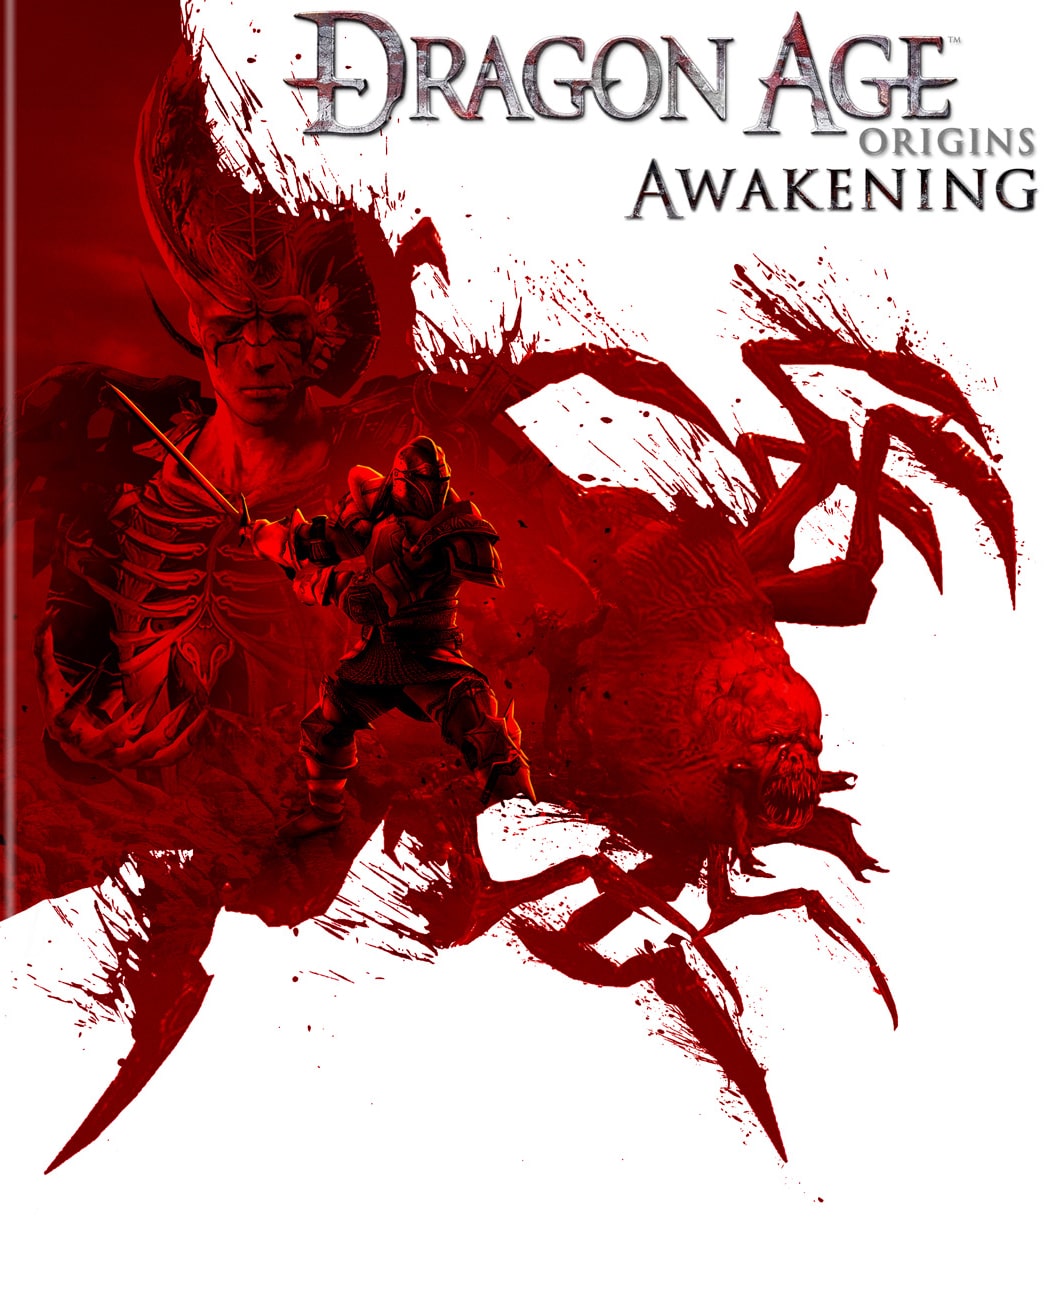 download dragon age origins awakening steam for free